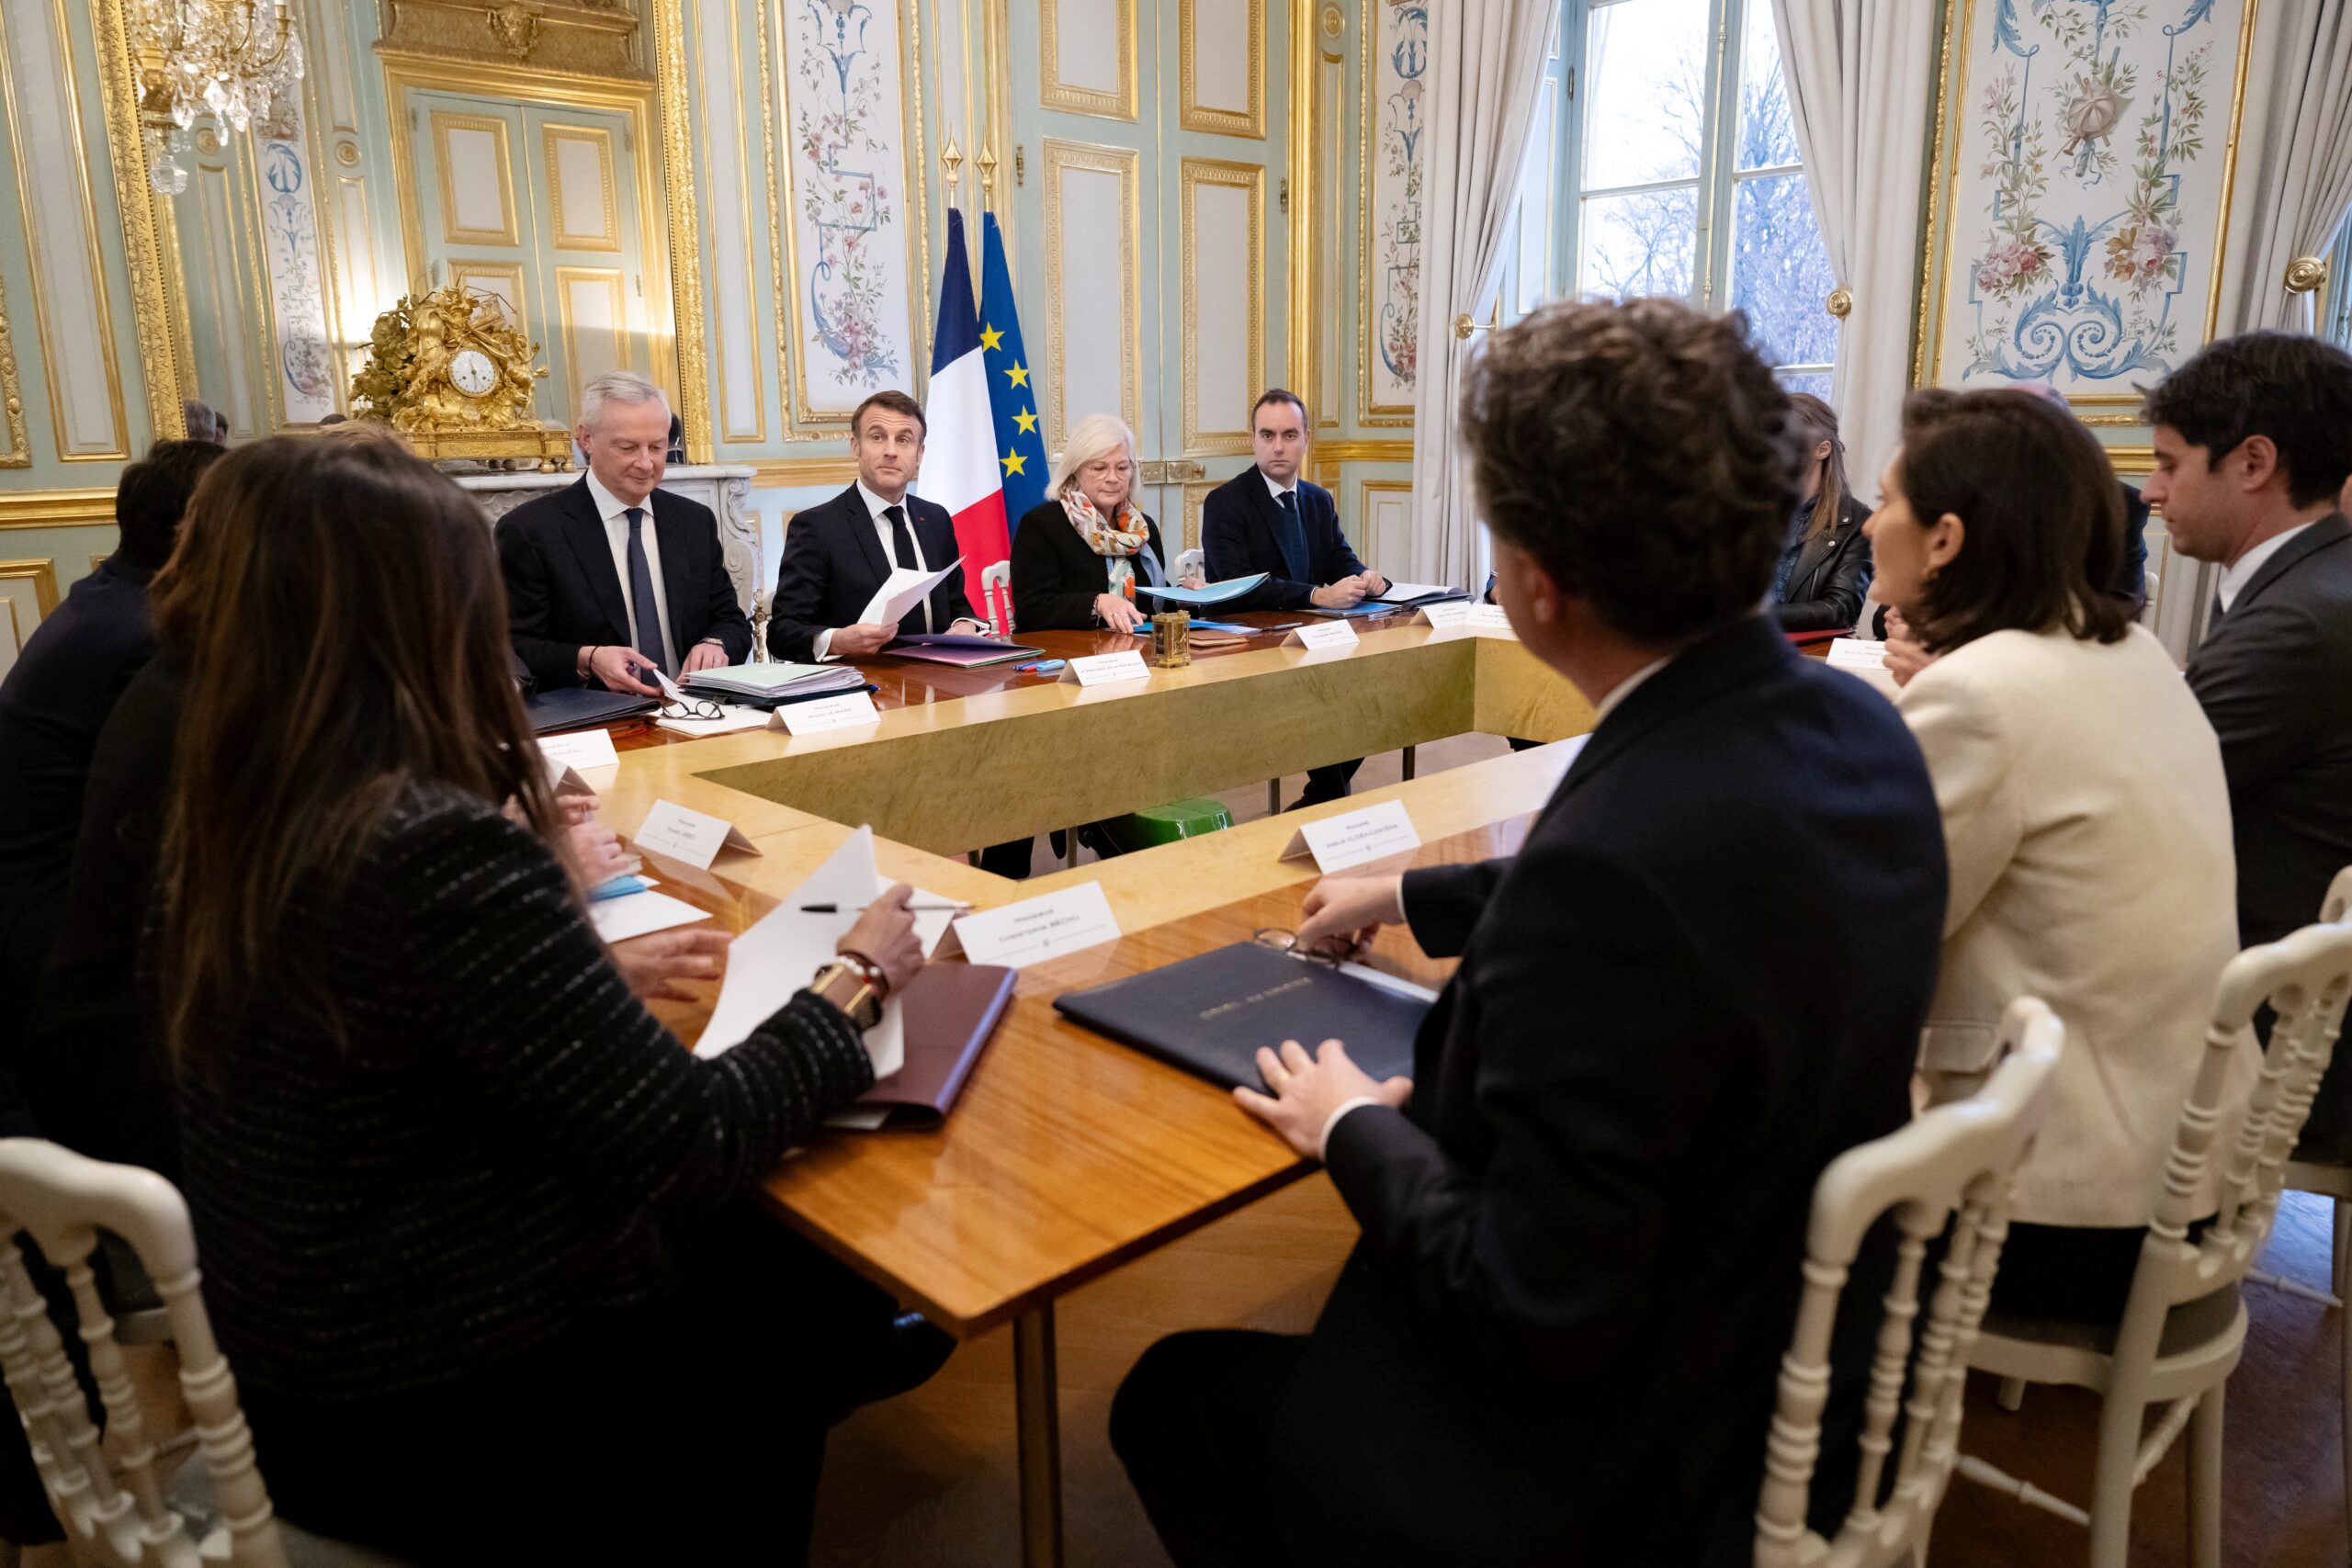 Le nouveau cabinet « révolutionnaire » de Macron peut-il changer la politique française ?